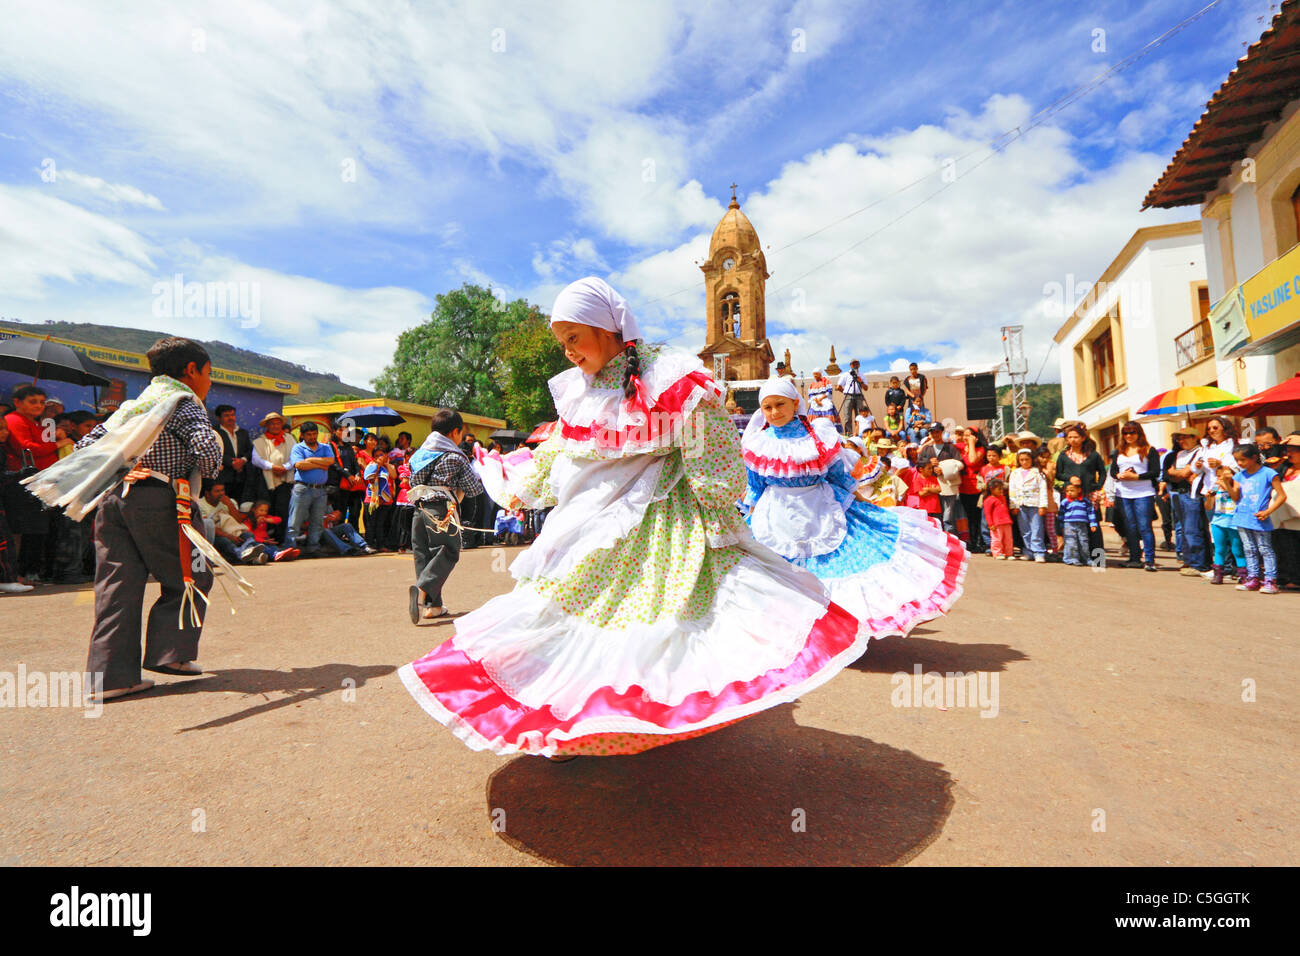 Tänzer von Nobsa Tanzgruppe außerhalb einen traditionellen Tanz durchführen. Nobsa, Boyacá, Kolumbien, Südamerika Stockfoto